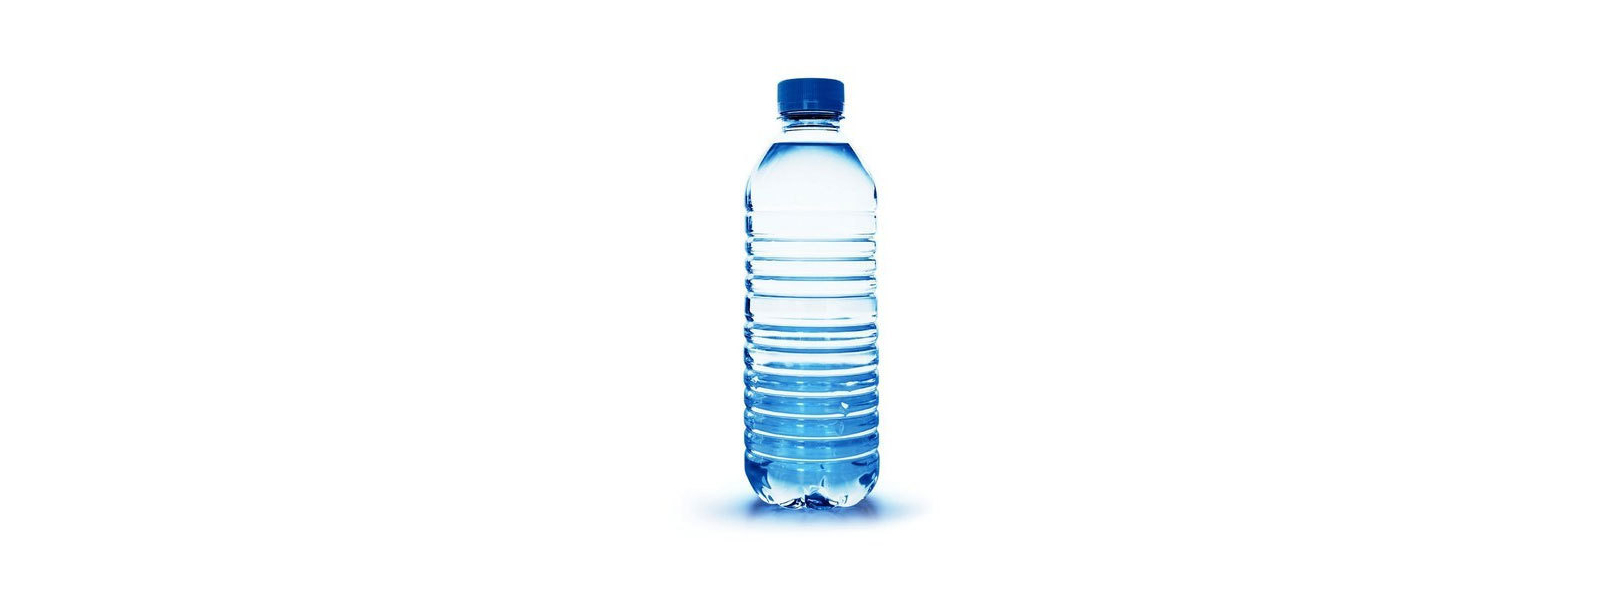 Gazette issued removing MRP for water bottles